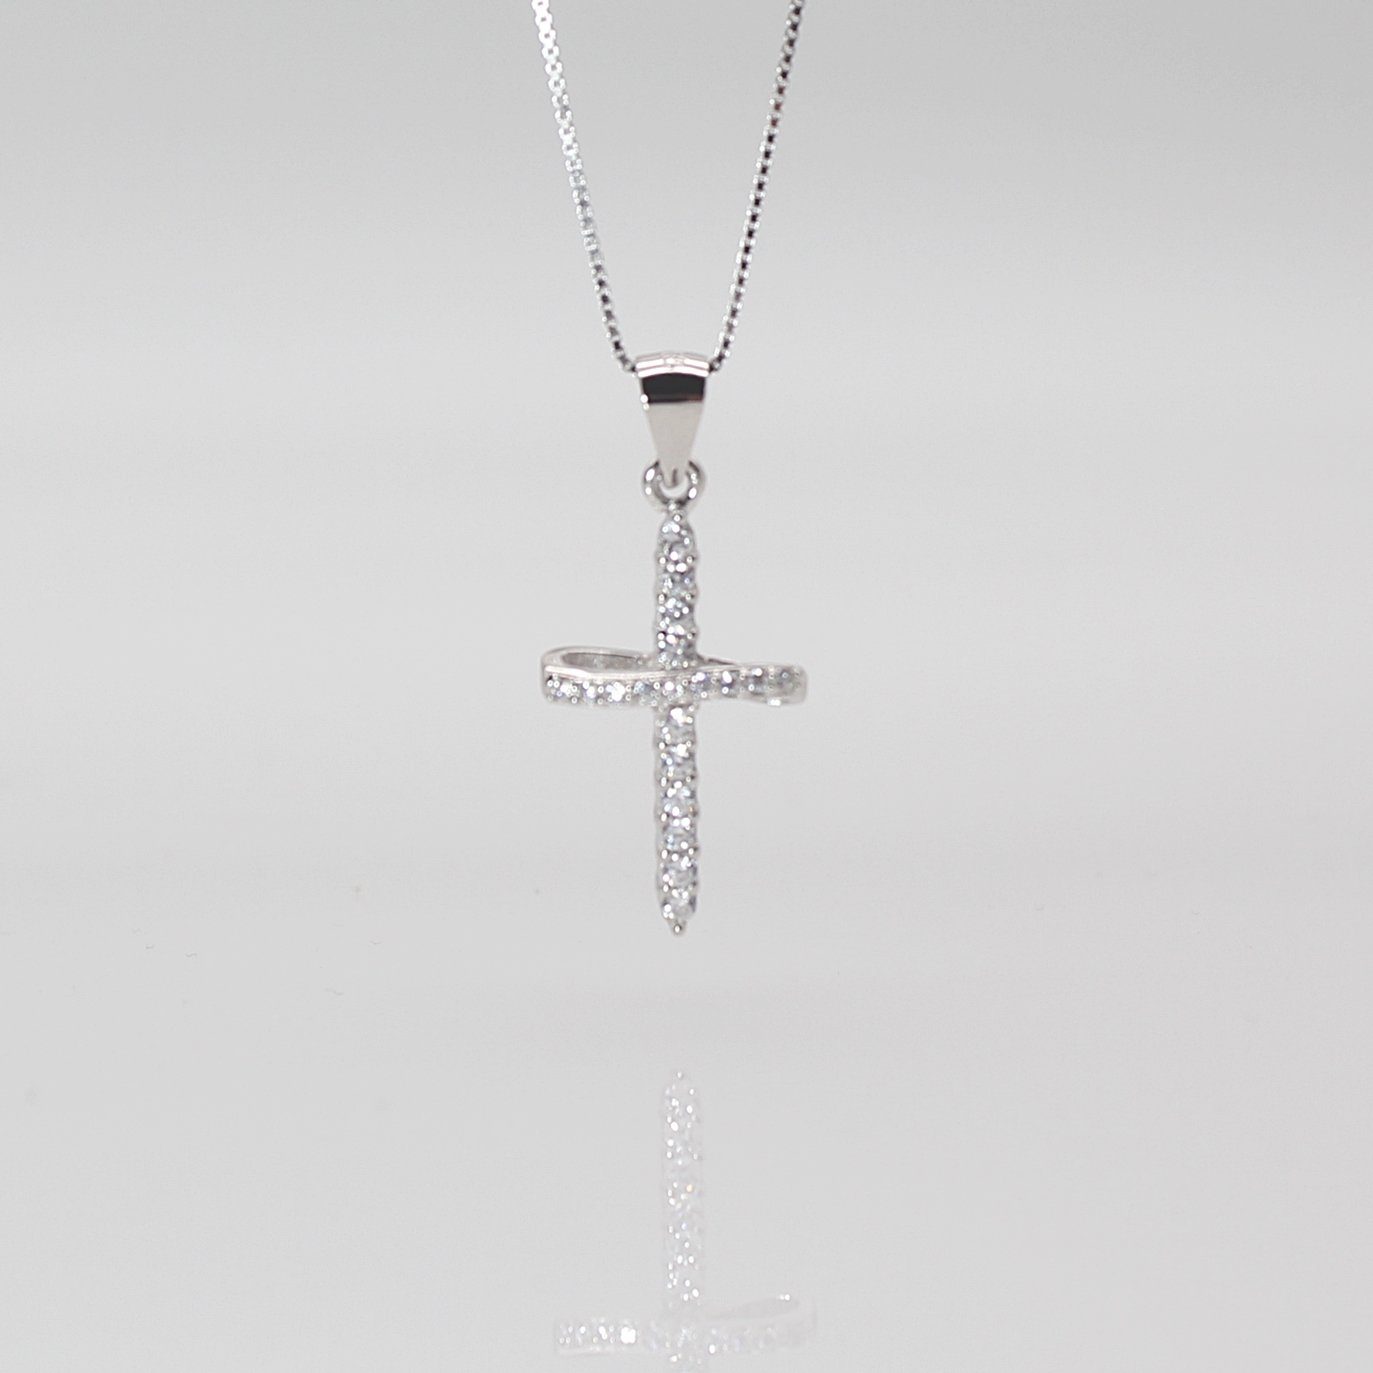 ELLAWIL Kreuzkette Silberkette mit Kreuz Anhänger Kreuzanhänger mit Strasssteinen (Kettenlänge 40 cm, Sterlingsilber 925), inklusive Geschenkschachtel